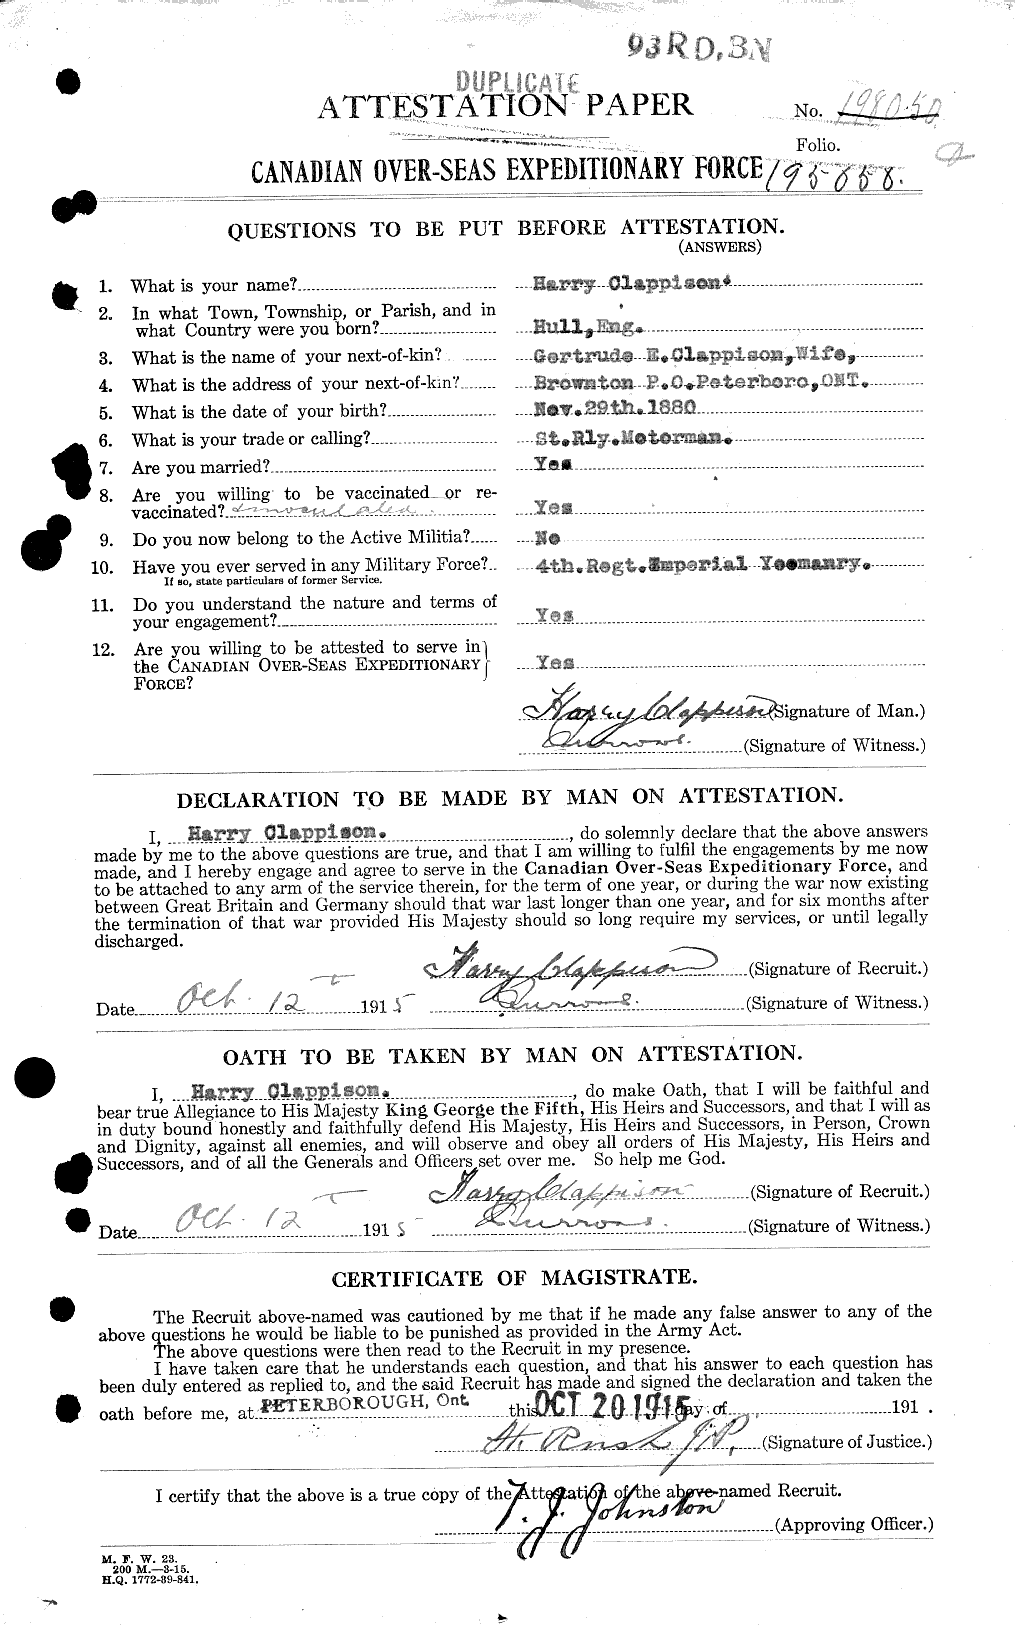 Dossiers du Personnel de la Première Guerre mondiale - CEC 020624a